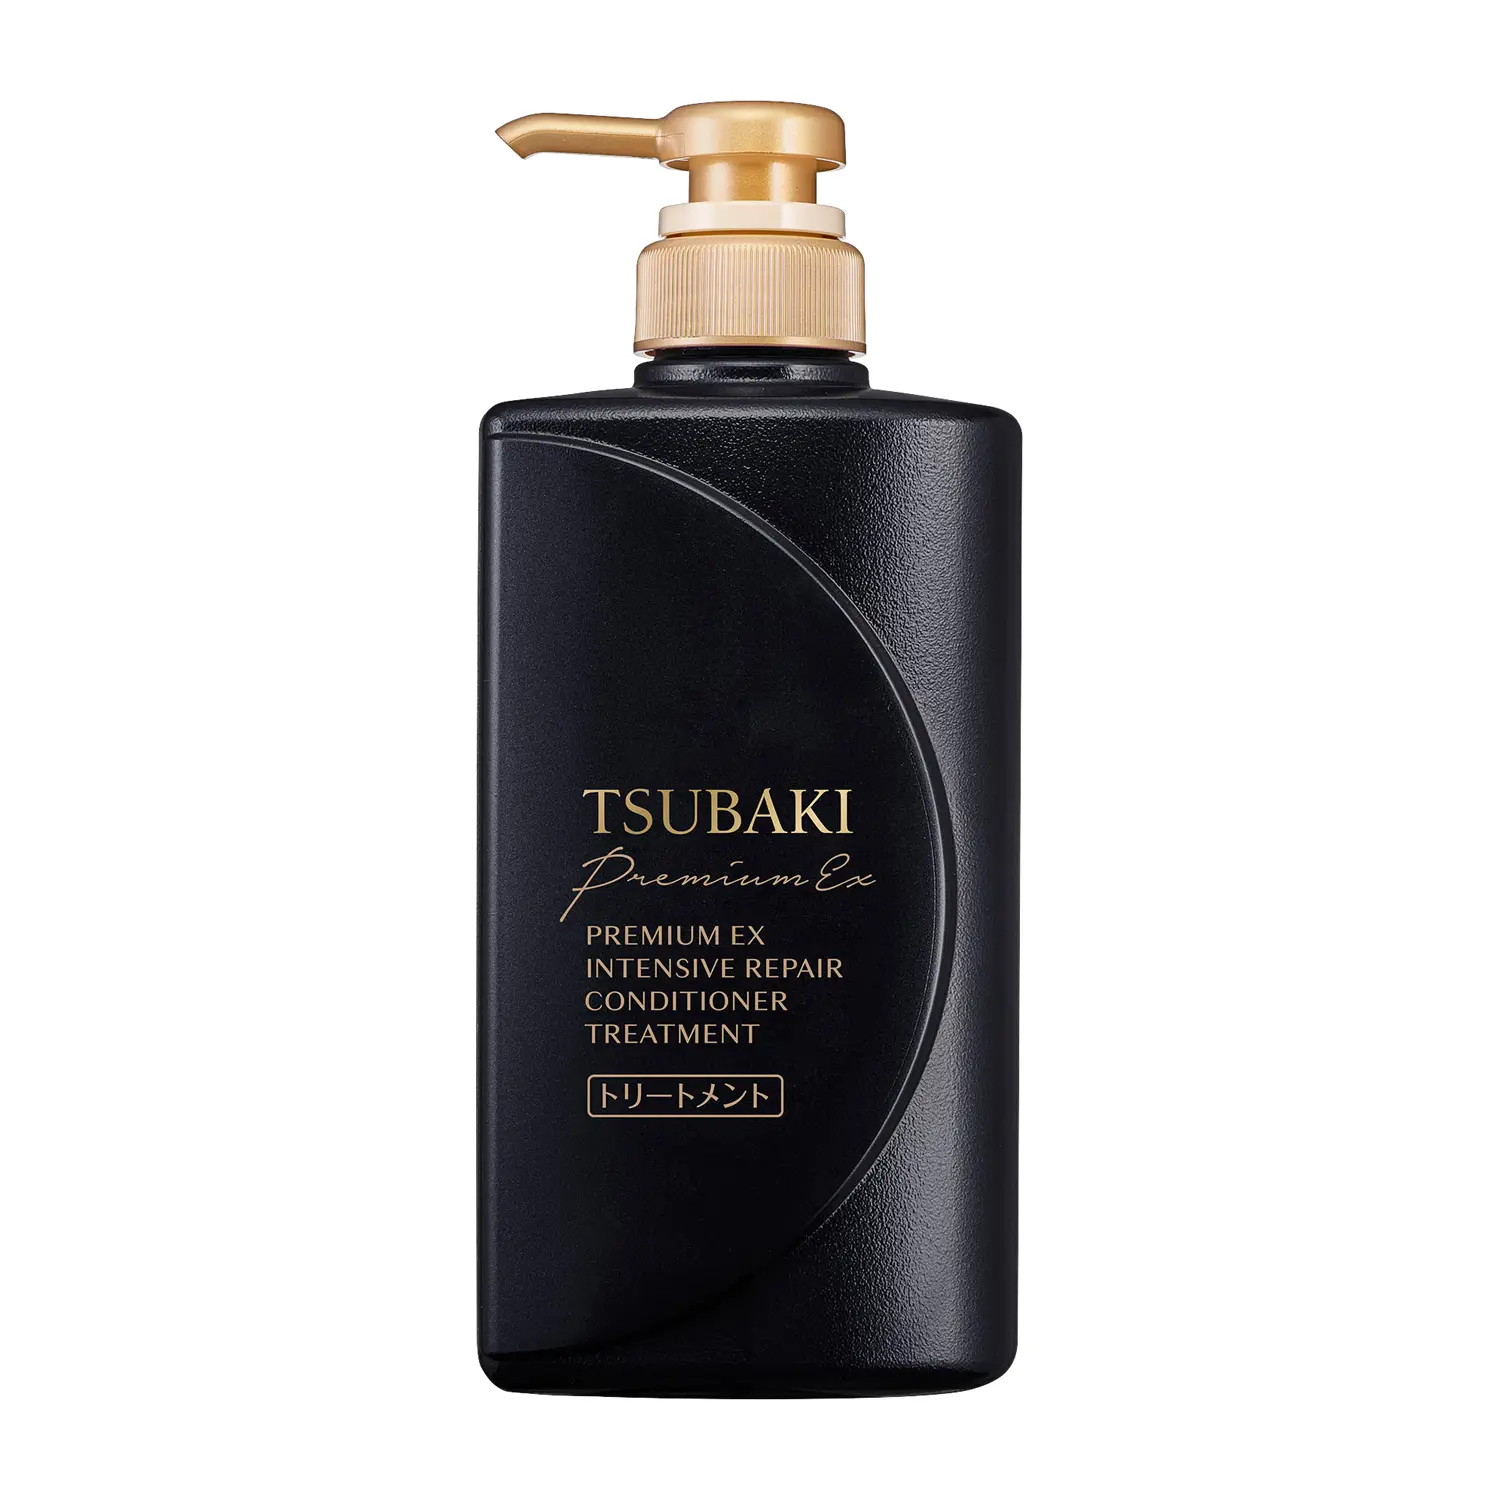 Shiseido TSUBAKI Premium EX Intensive Repair Conditioner Treatment